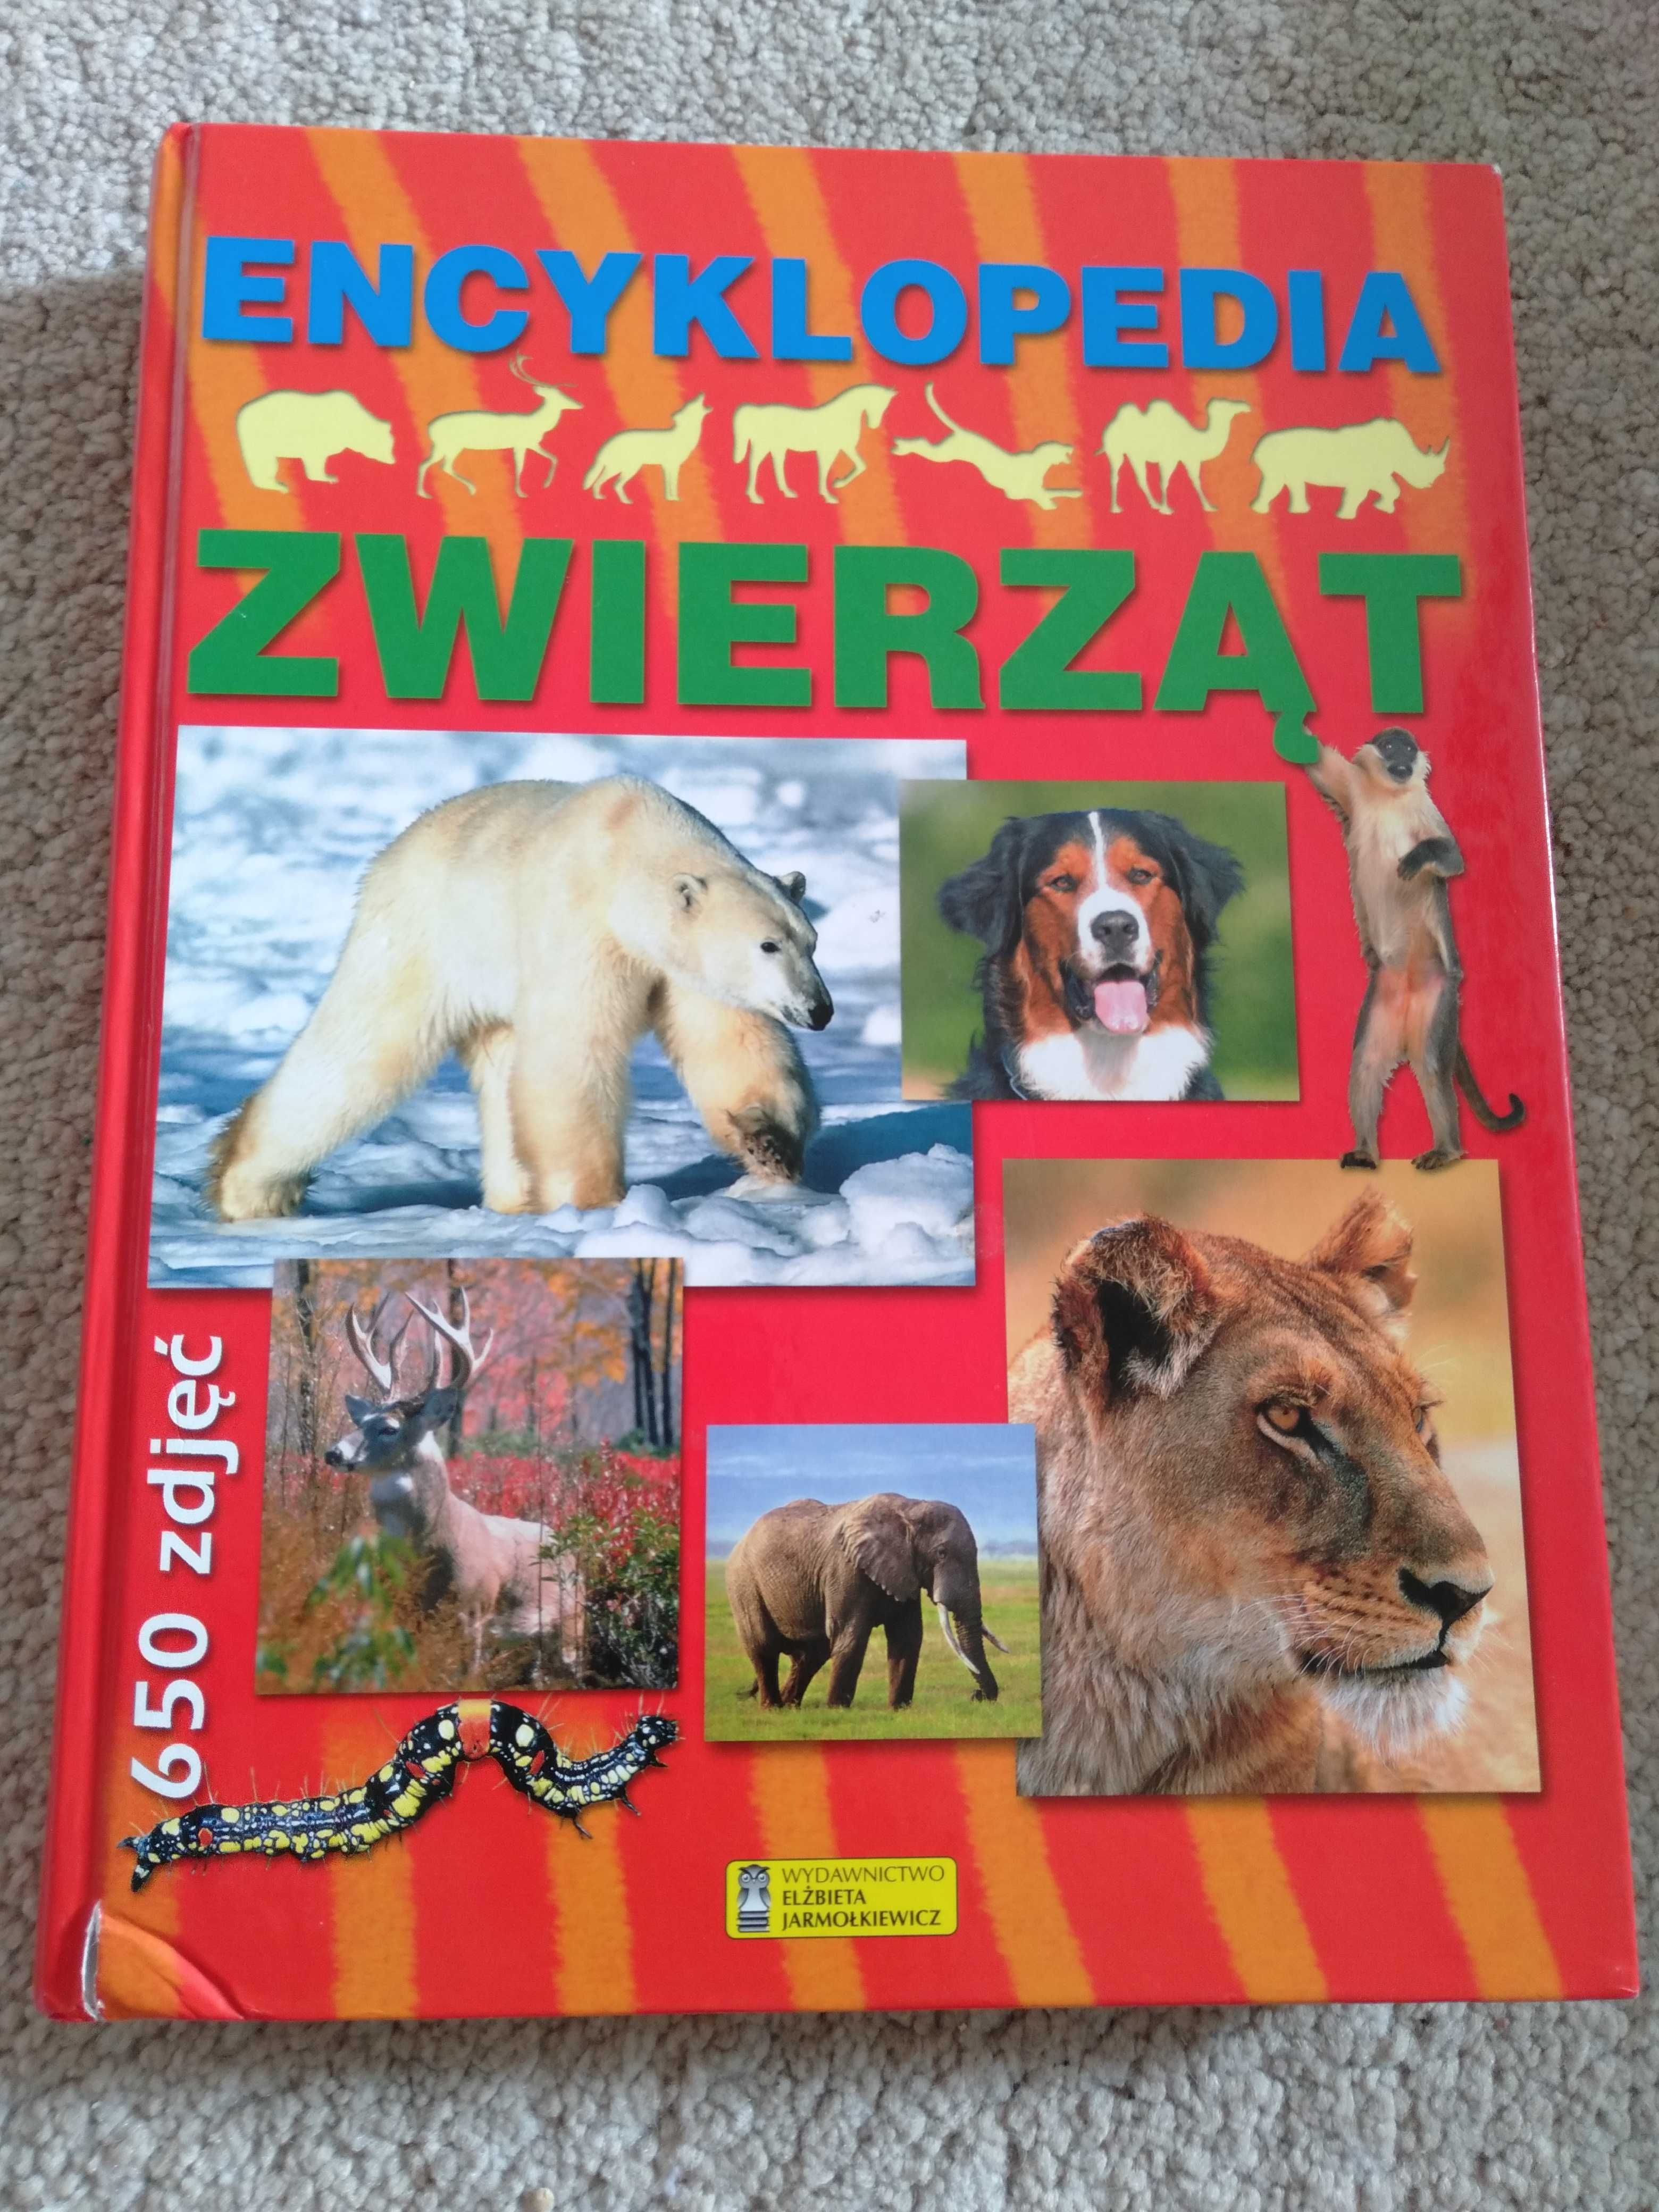 Encyklopedia zwierząt. Stan bardzo dobry. 300 stron, 650 ilustracji